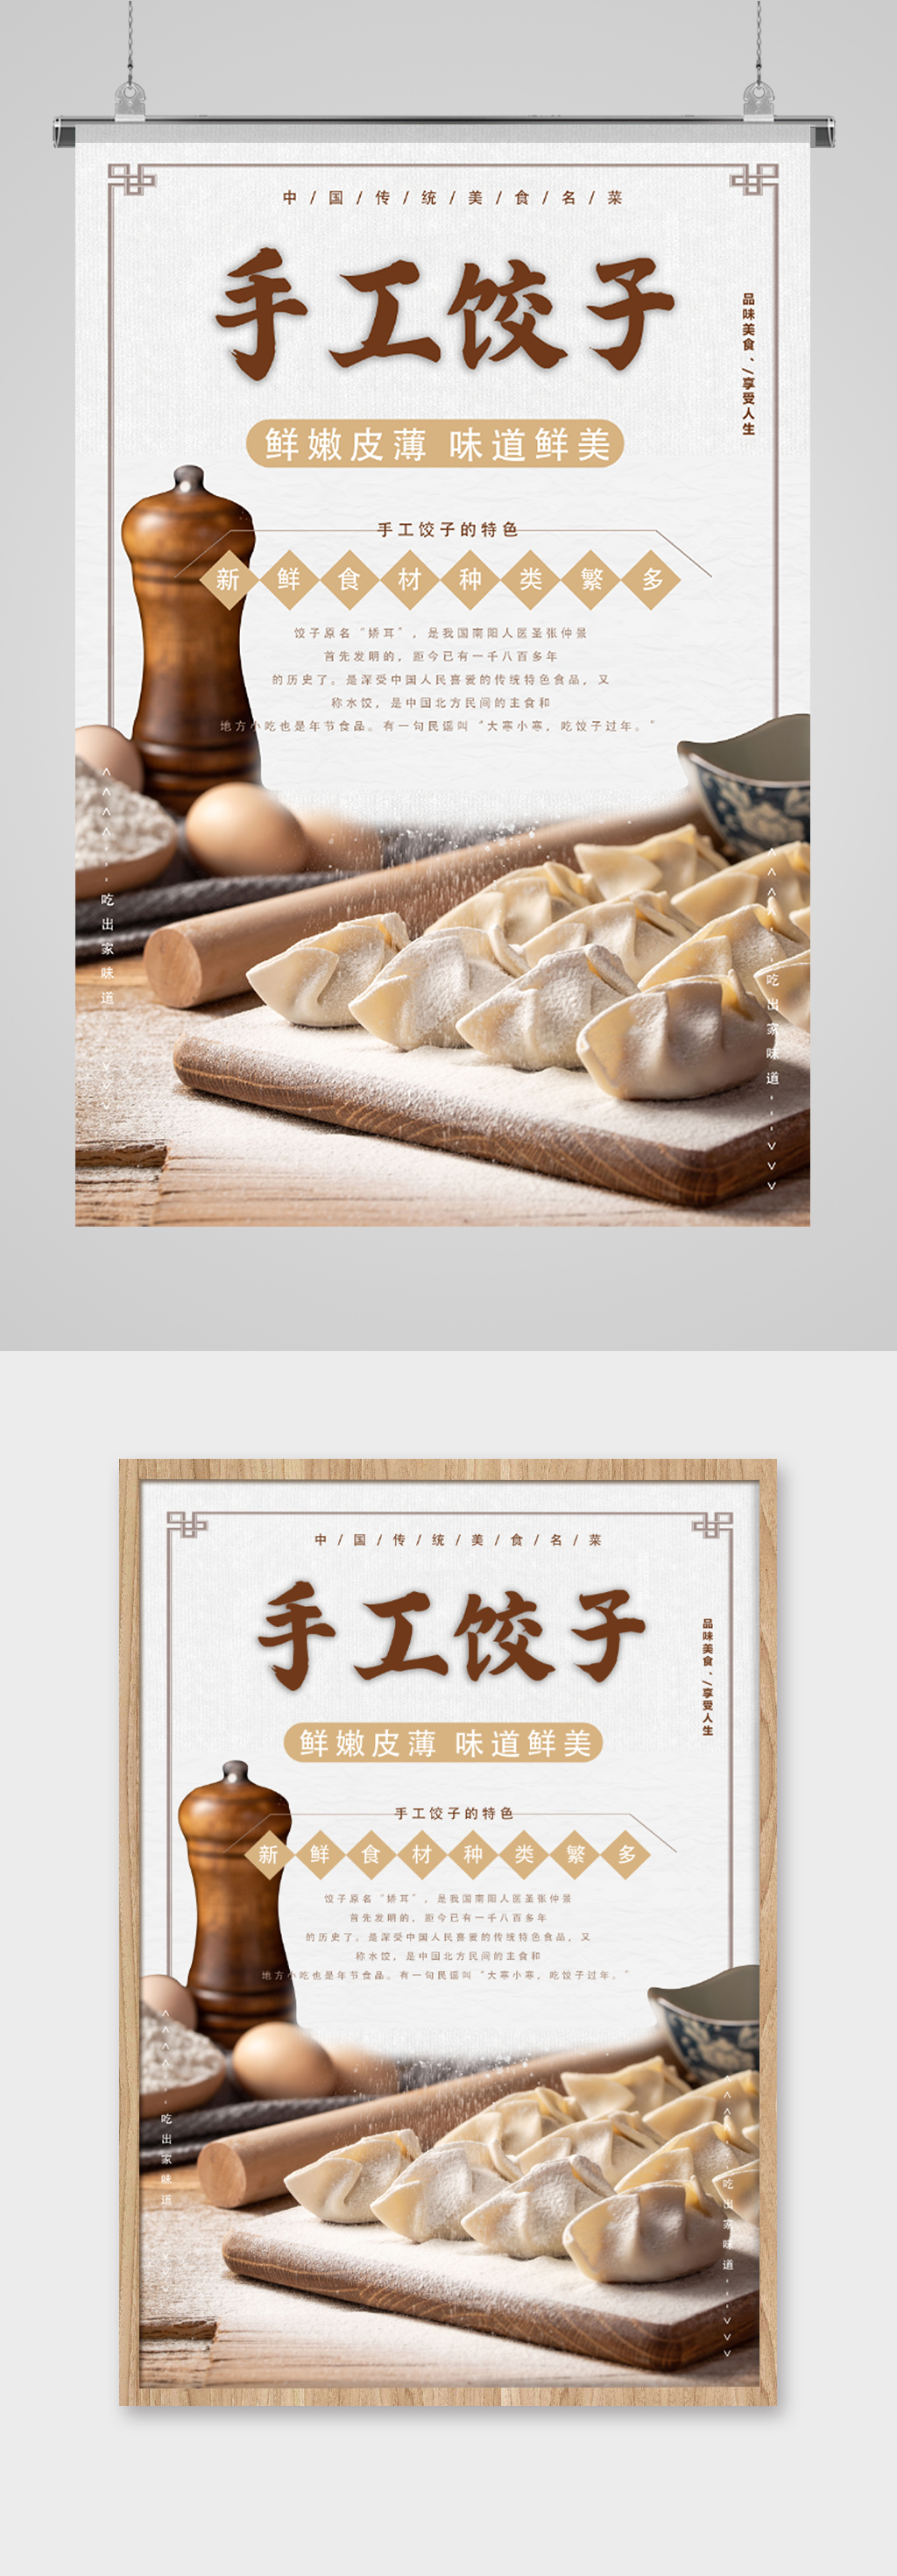 中国传统美食手工饺子宣传海报